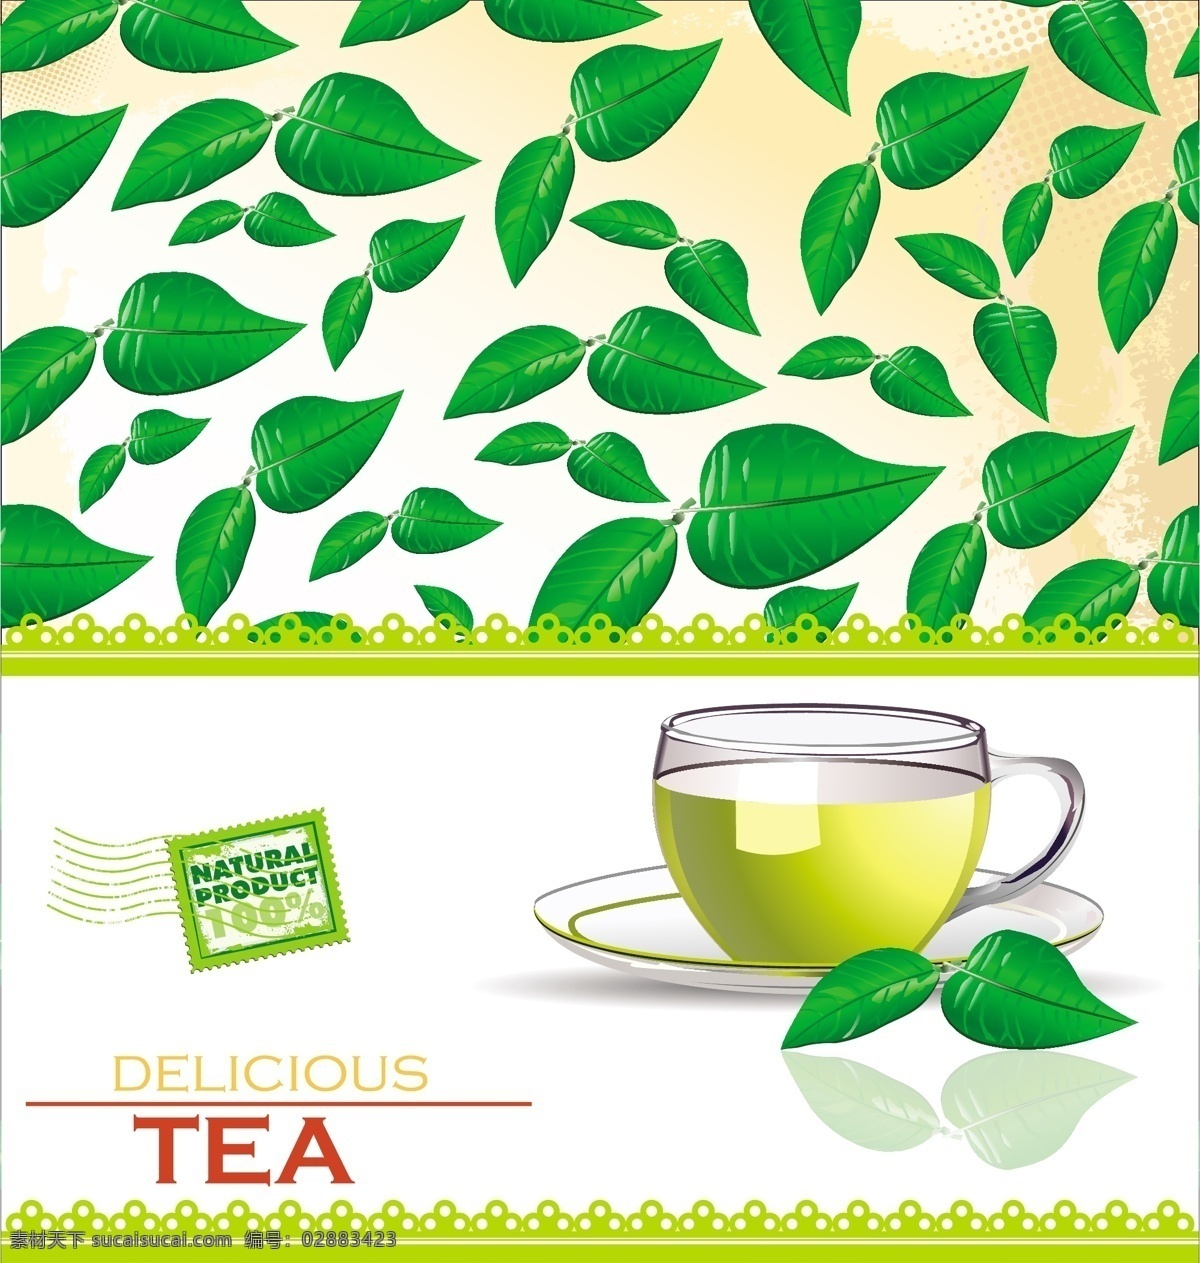 矢量茶叶菜单 茶叶背景 菜单封面 矢量玻璃茶杯 绿茶 矢量茶叶 矢量茶杯 茶水饮料 生活百科 矢量素材 白色